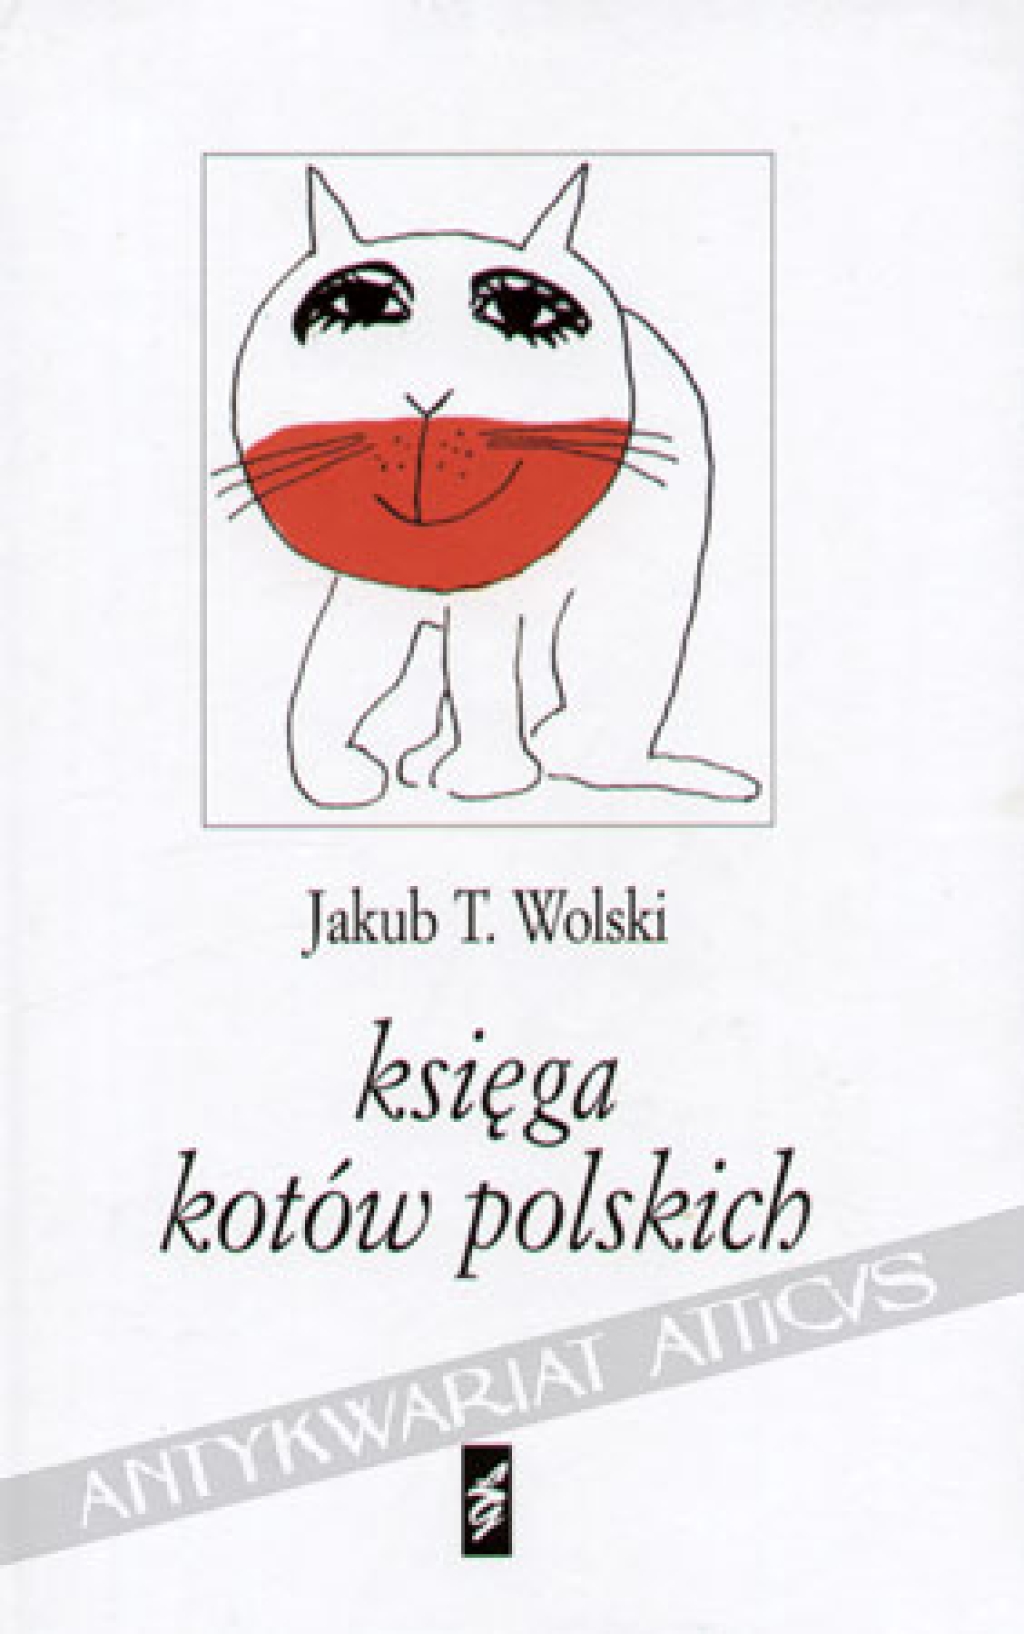 Księga kotów polskich [autograf]